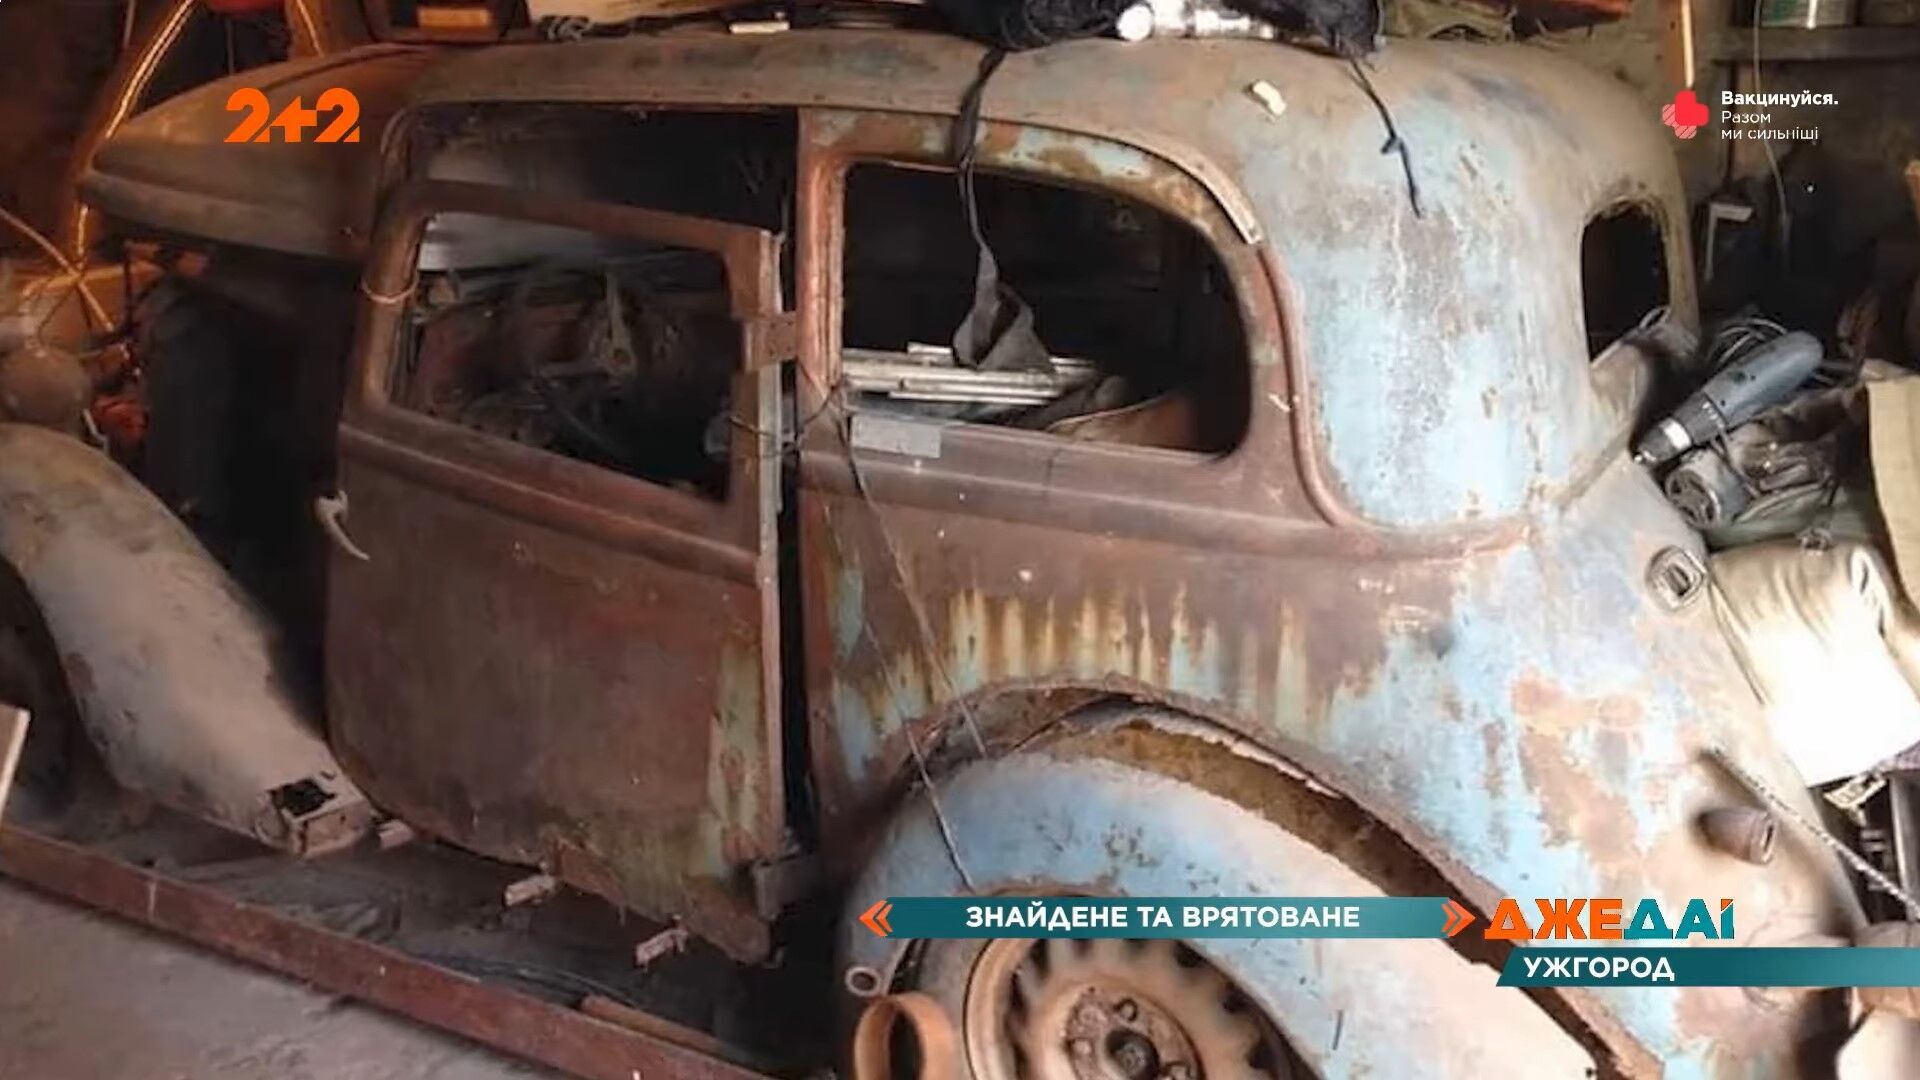 До реставрации узнать в этом автомобиле детище компании FIAT было достаточно сложно